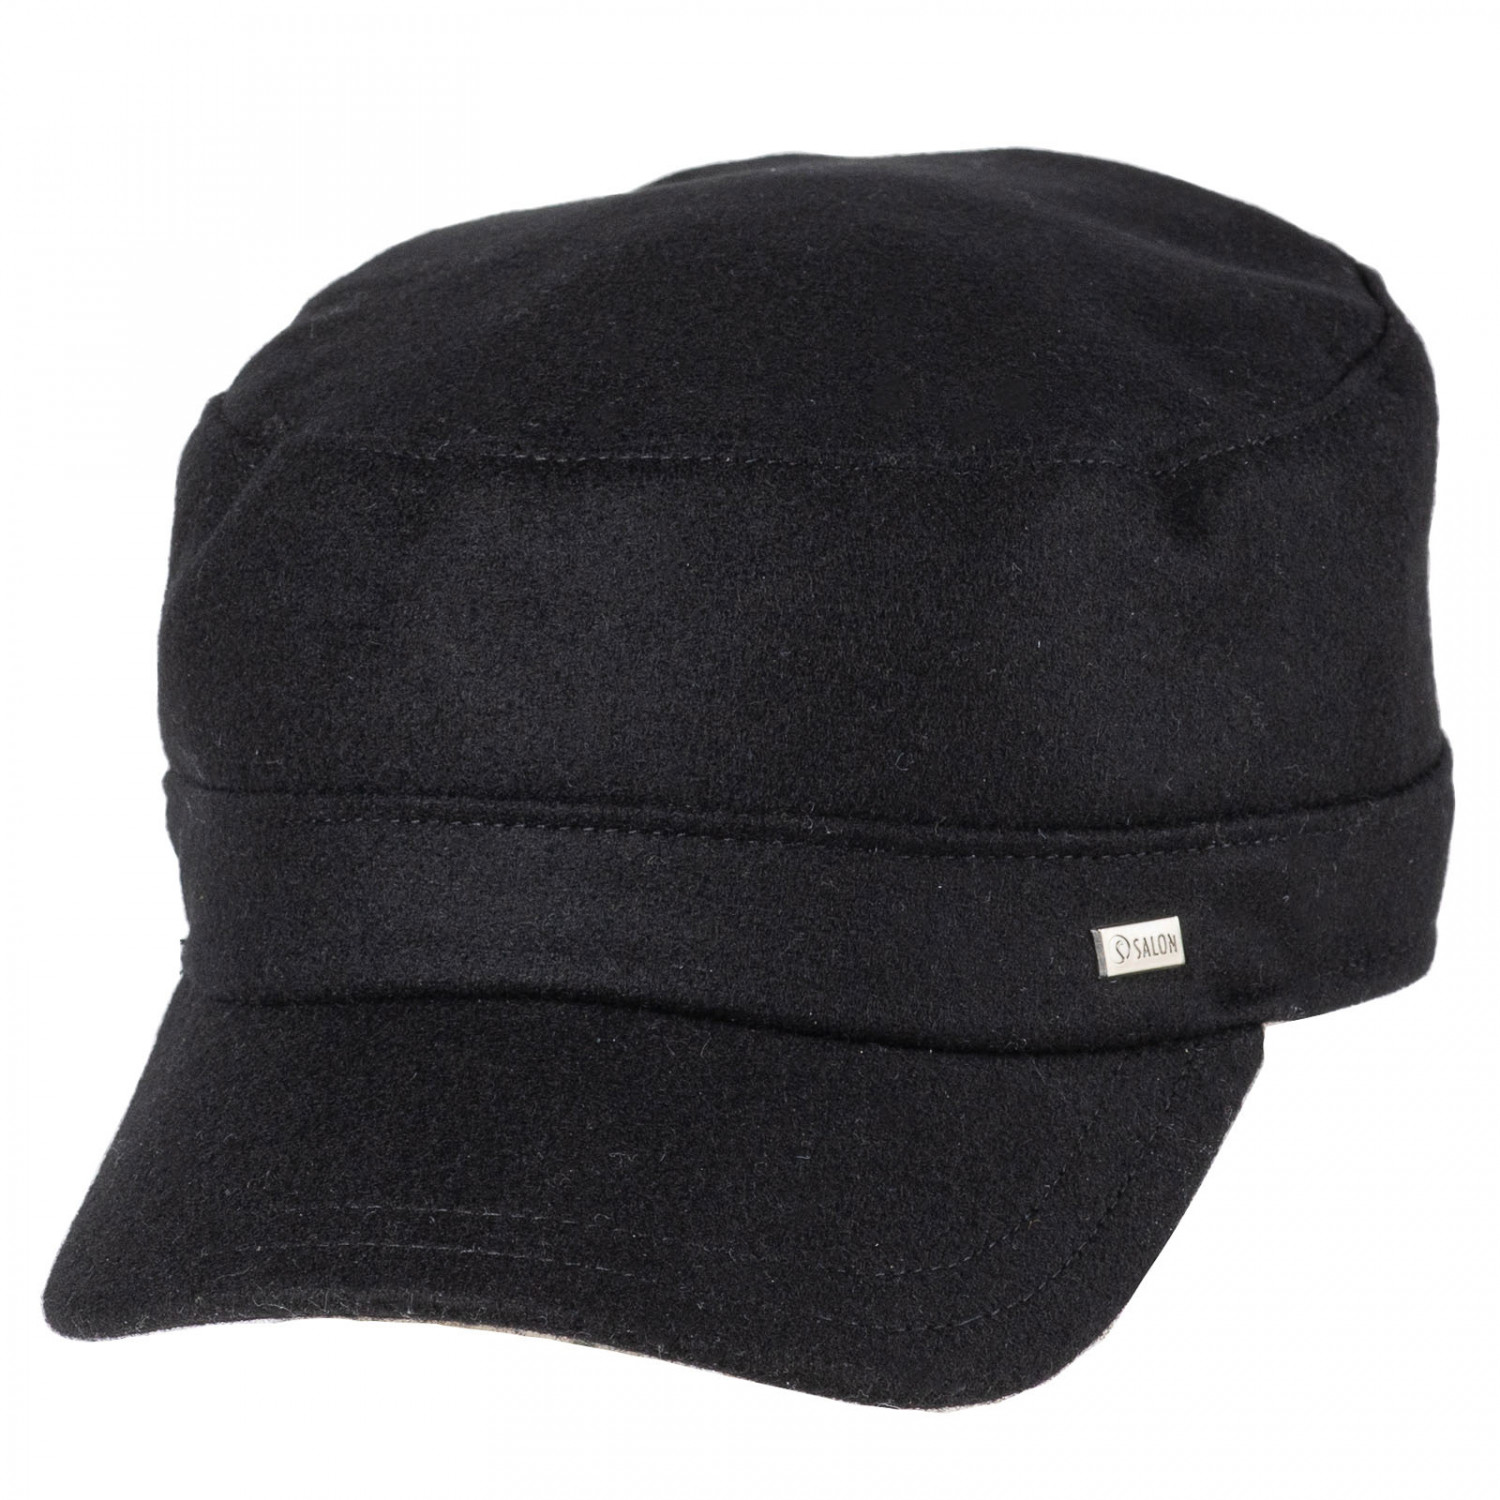 Pax 7 Gen Wool Winter cap